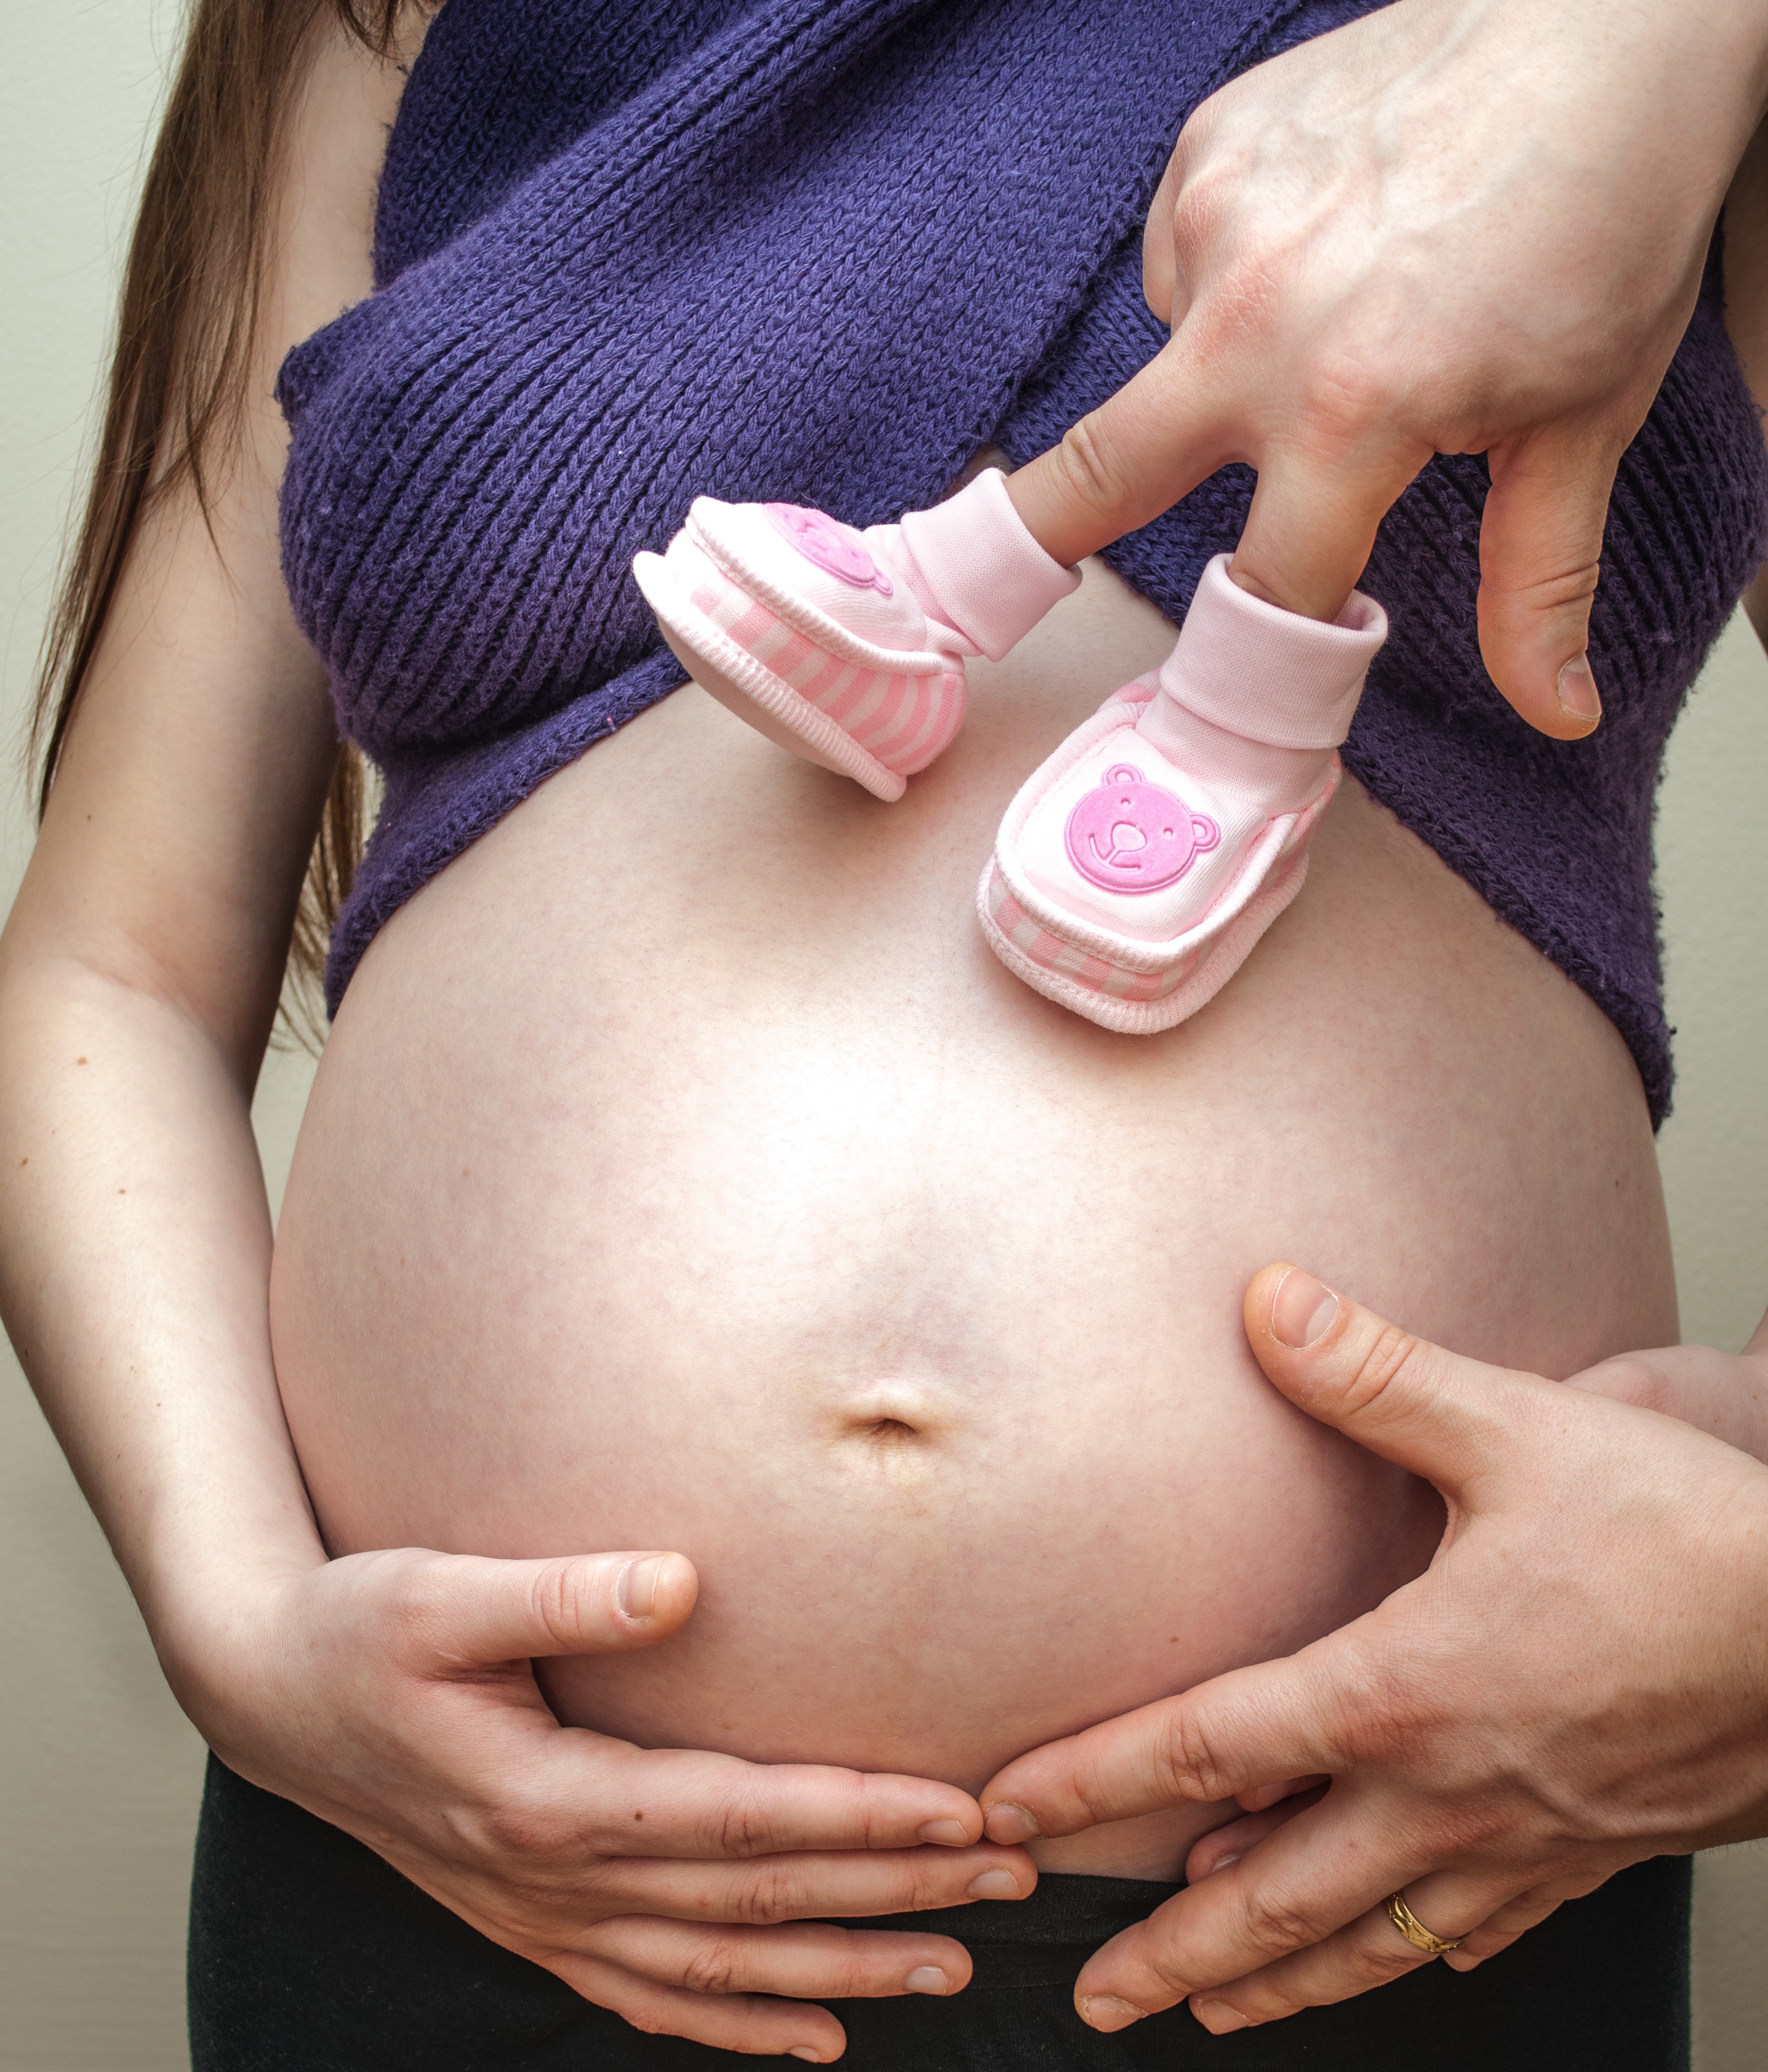 Ciclo menstrual irregular: ¿Puedo quedar embarazada?